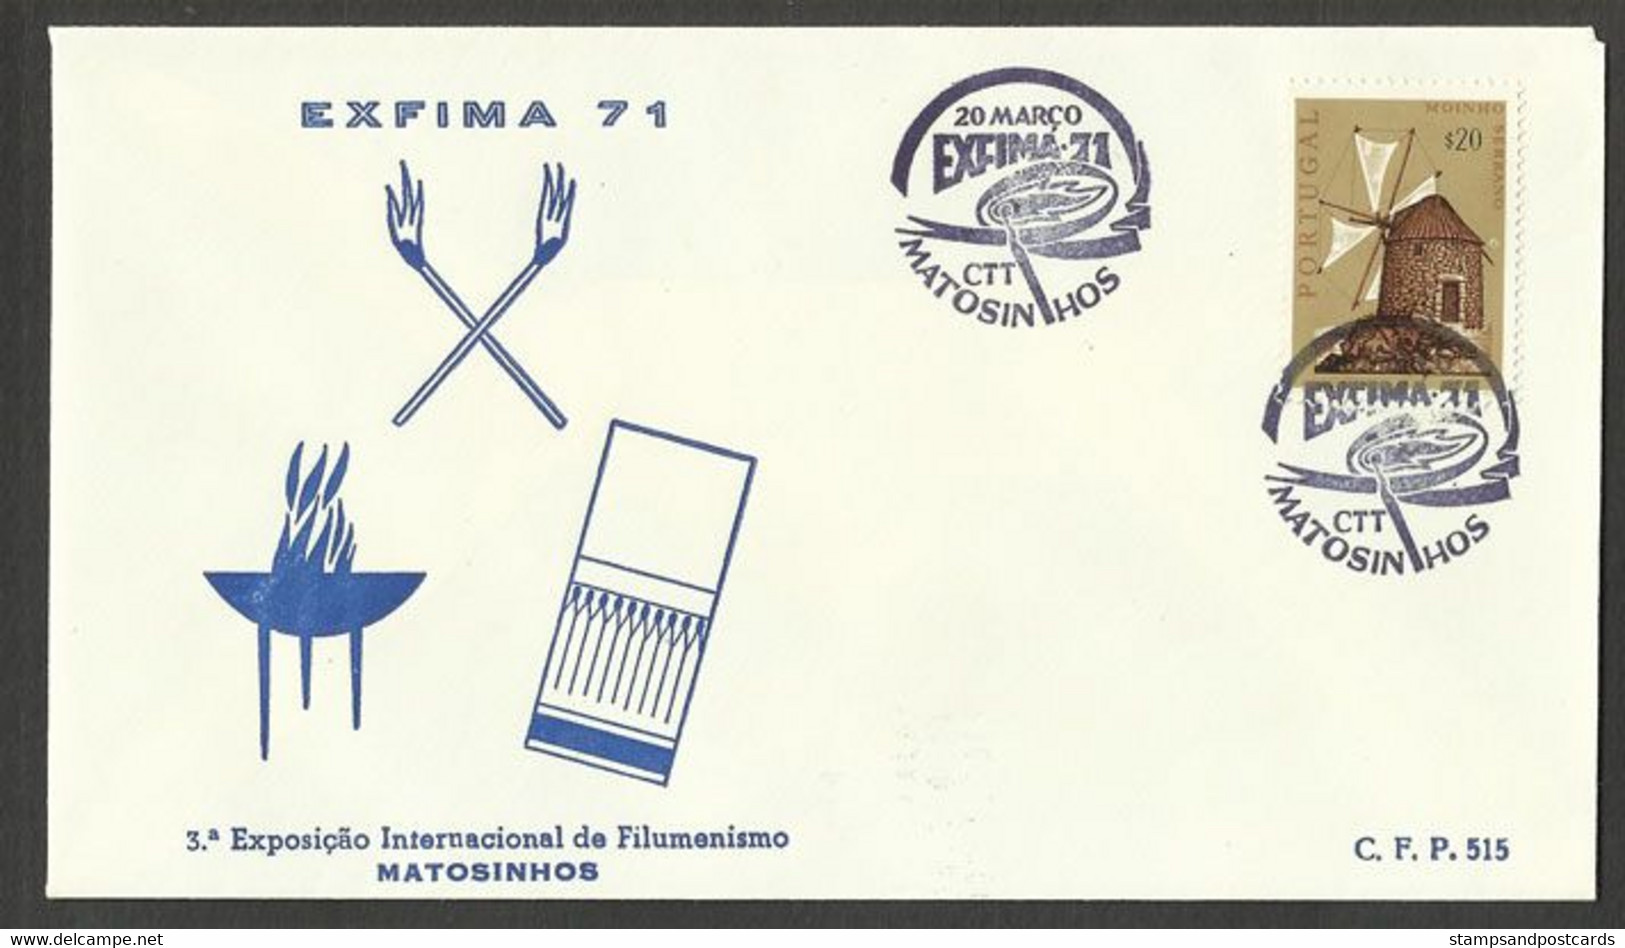 Portugal Cachet A Date Expo Collection Boîtes Allumettes 1971 Matosinhos Event Pmk Matches Matchbook Collector Expo - Annullamenti Meccanici (pubblicitari)